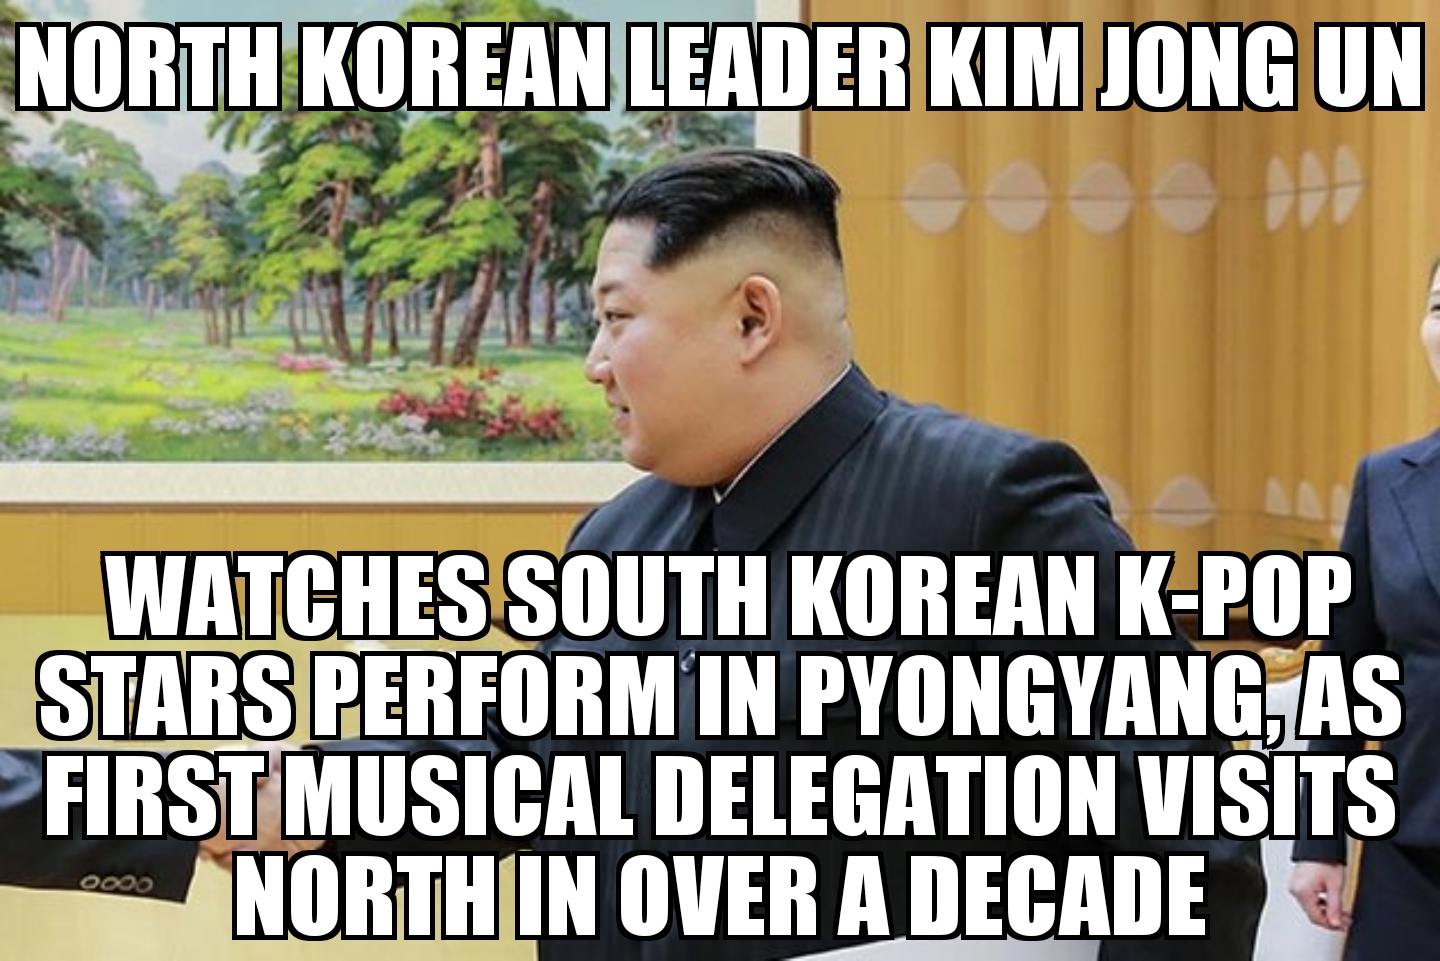 Kim Jong Un watches K-pop stars in Pyongyang